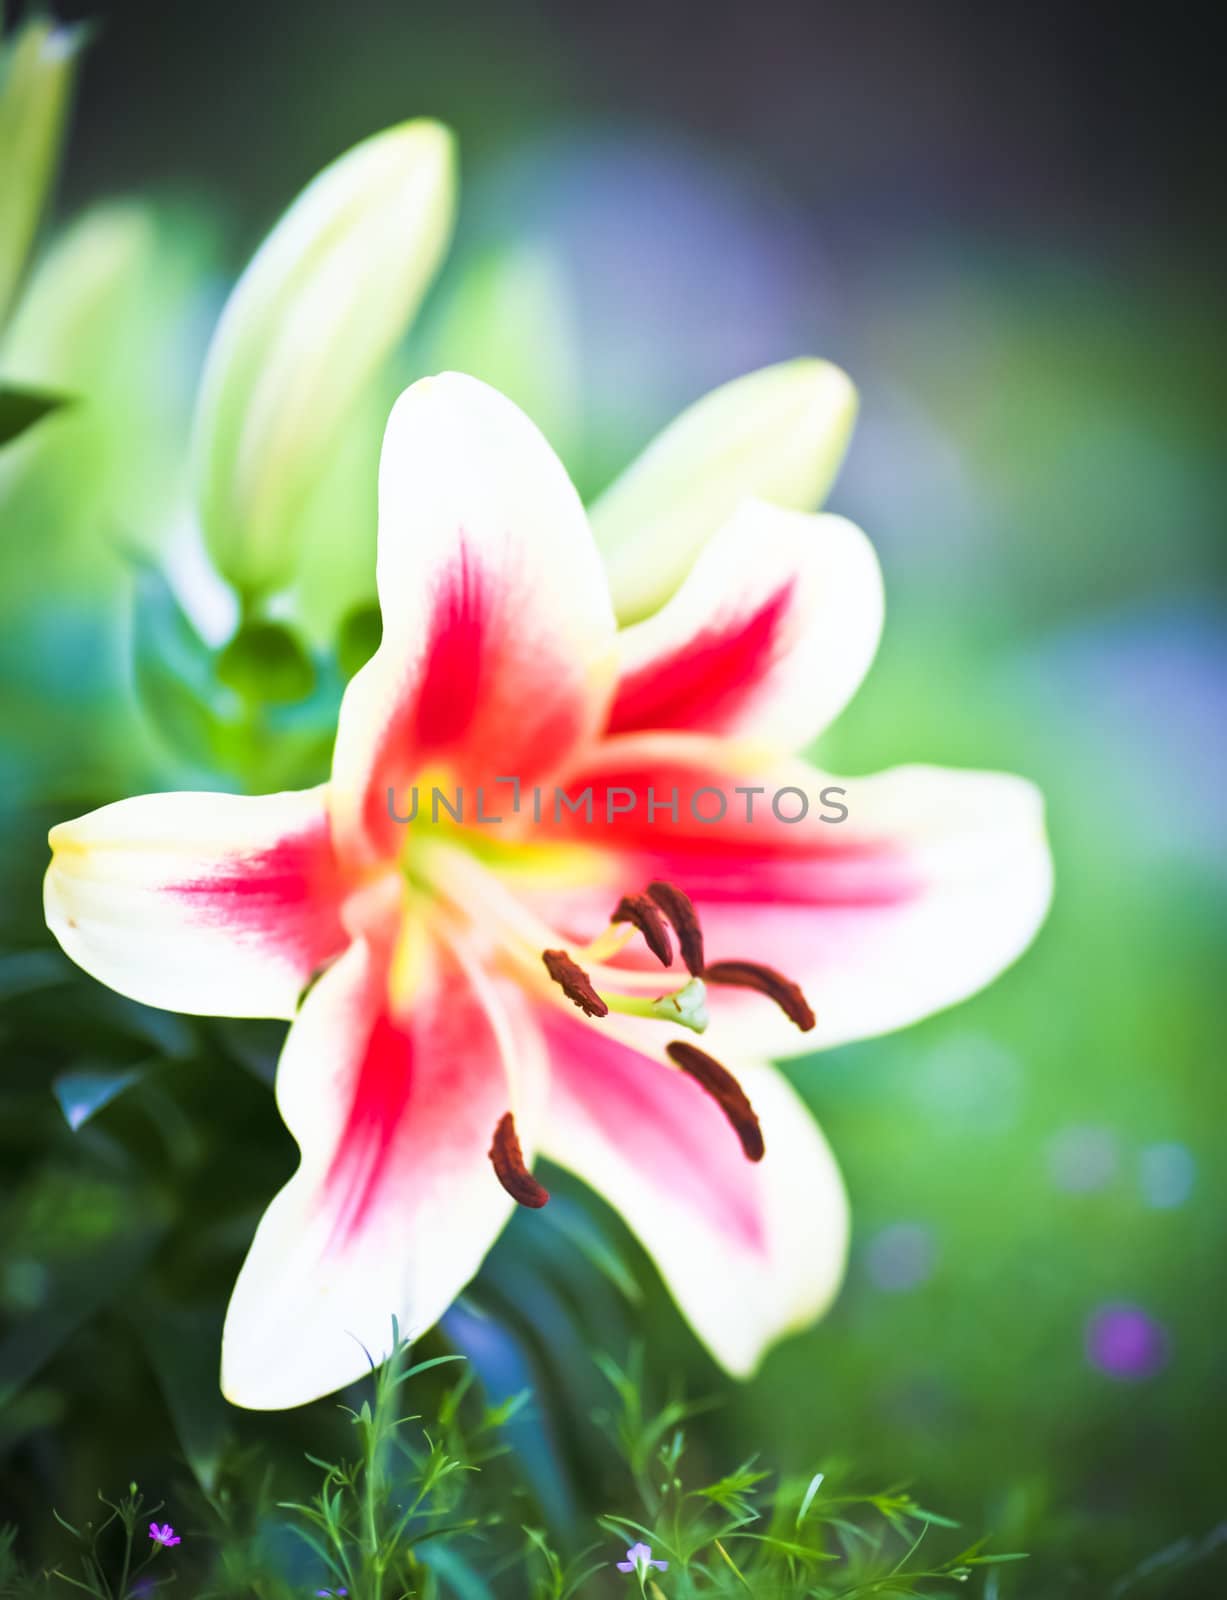 Lily background by Suriyaphoto